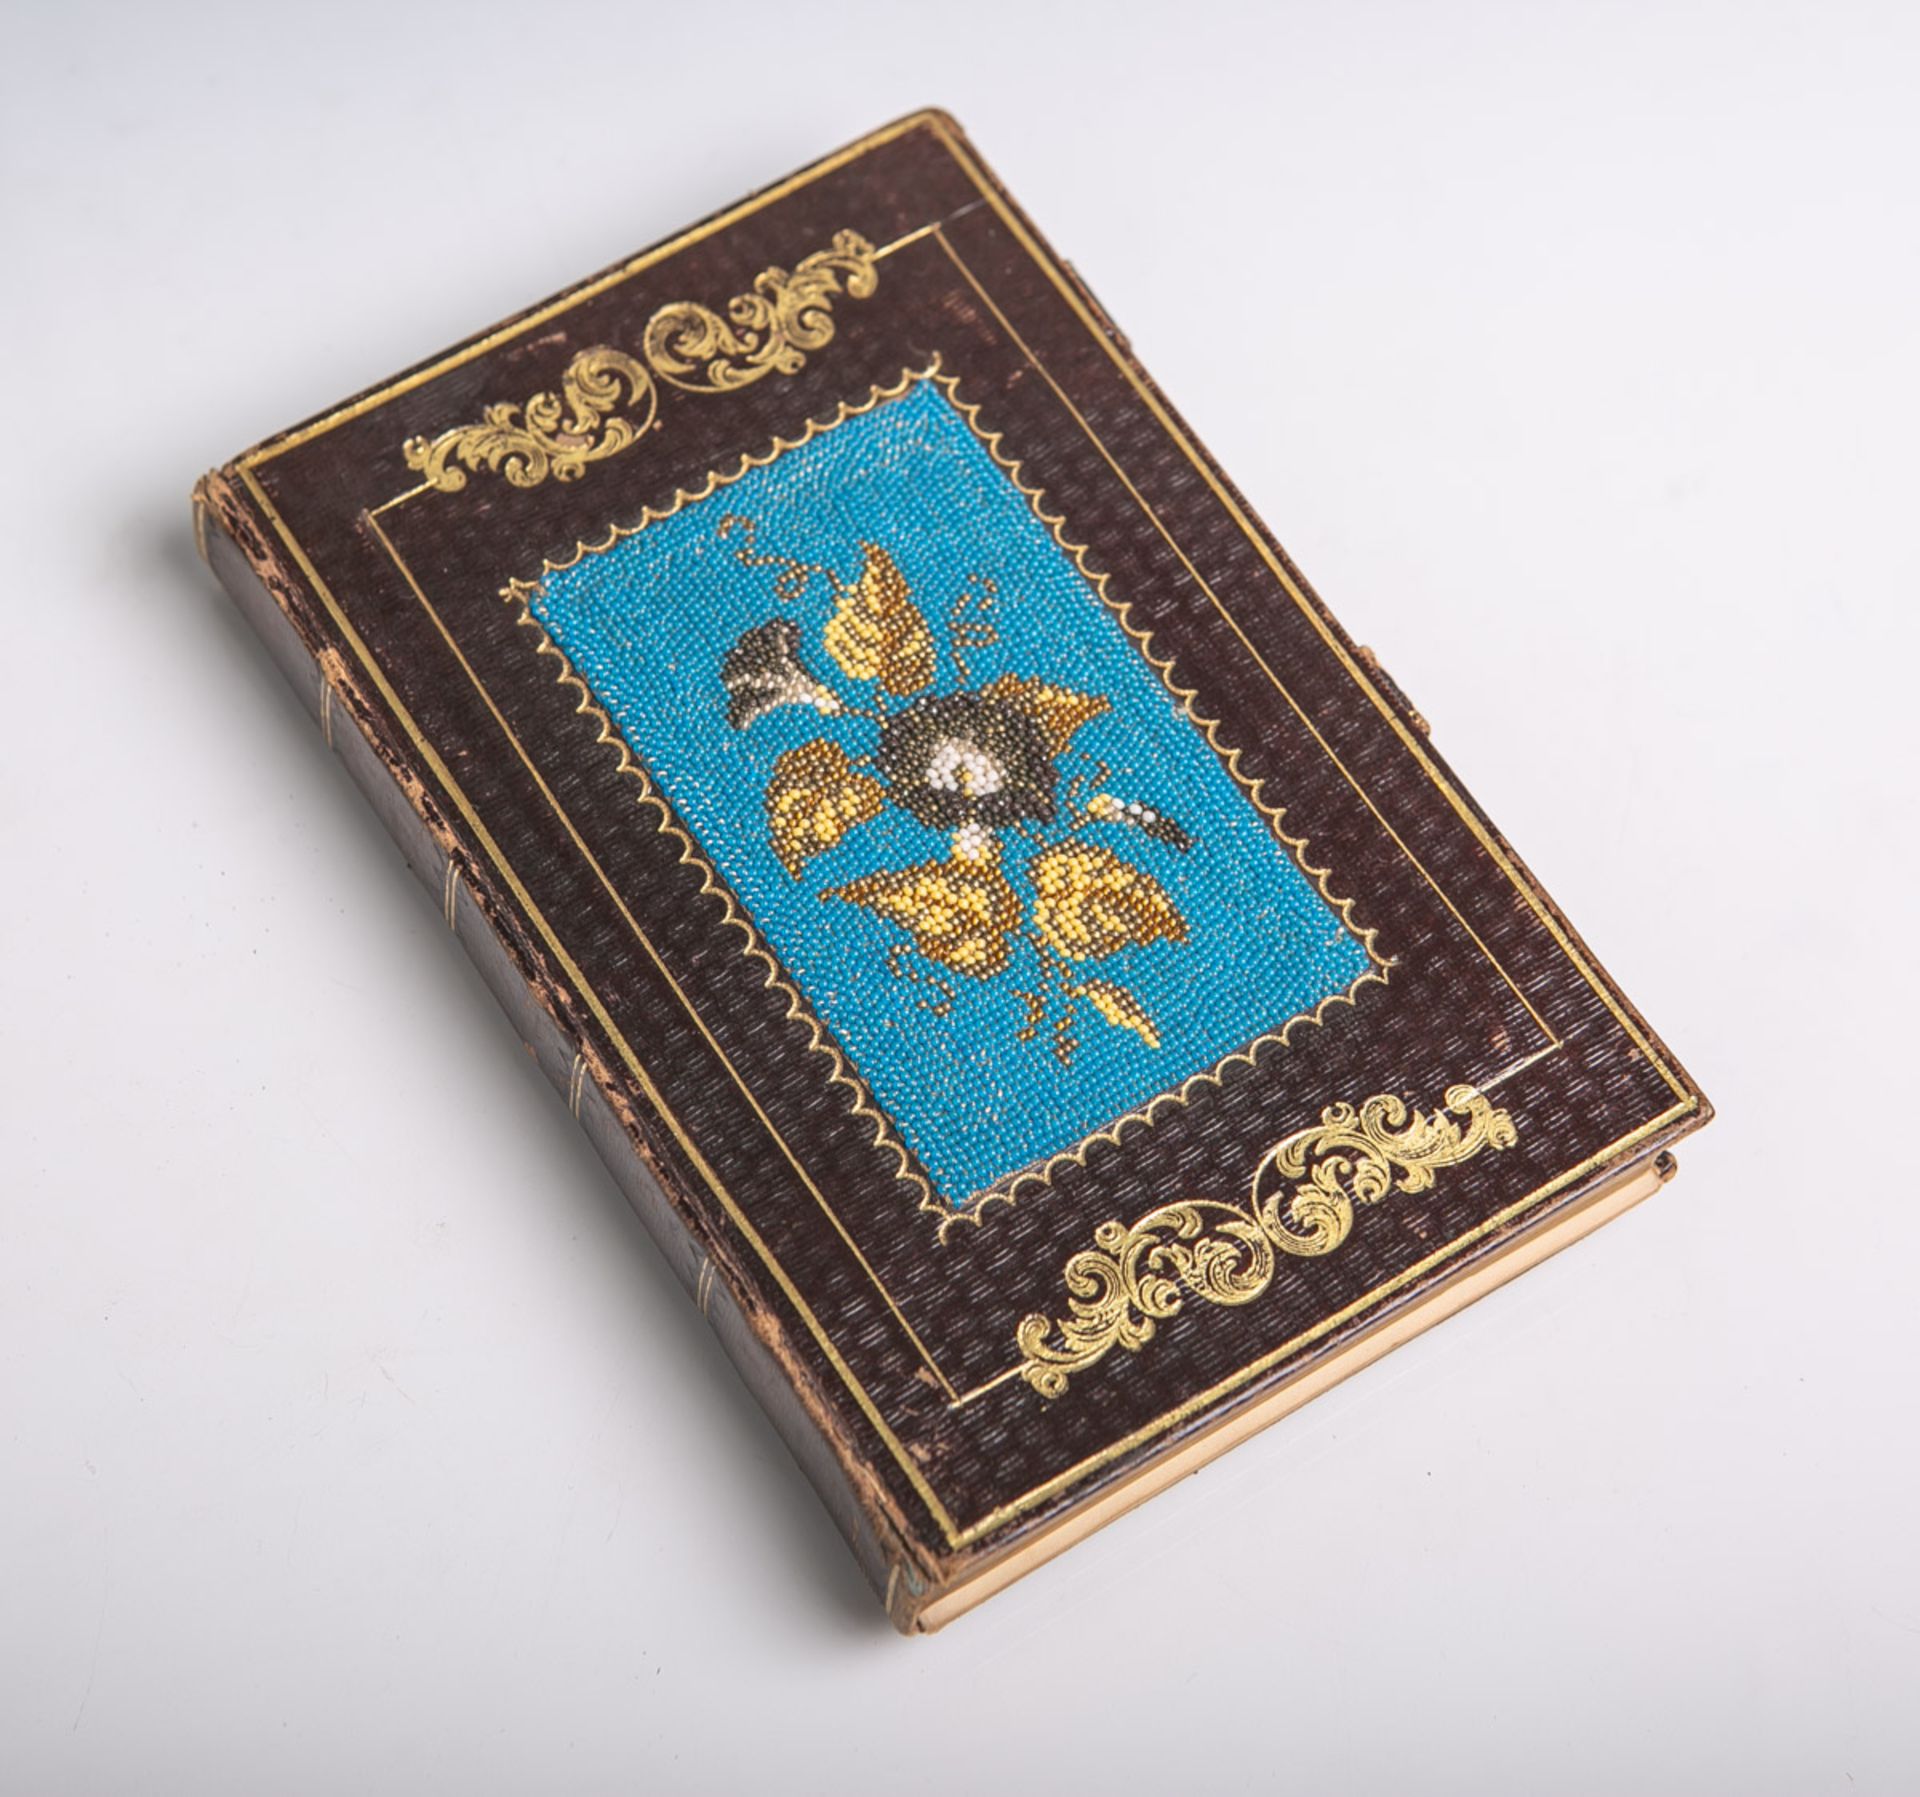 Altes Notiz-/Tagebuch (19. Jahrhundert), Einband mit Goldprägeverzierungen und feiner